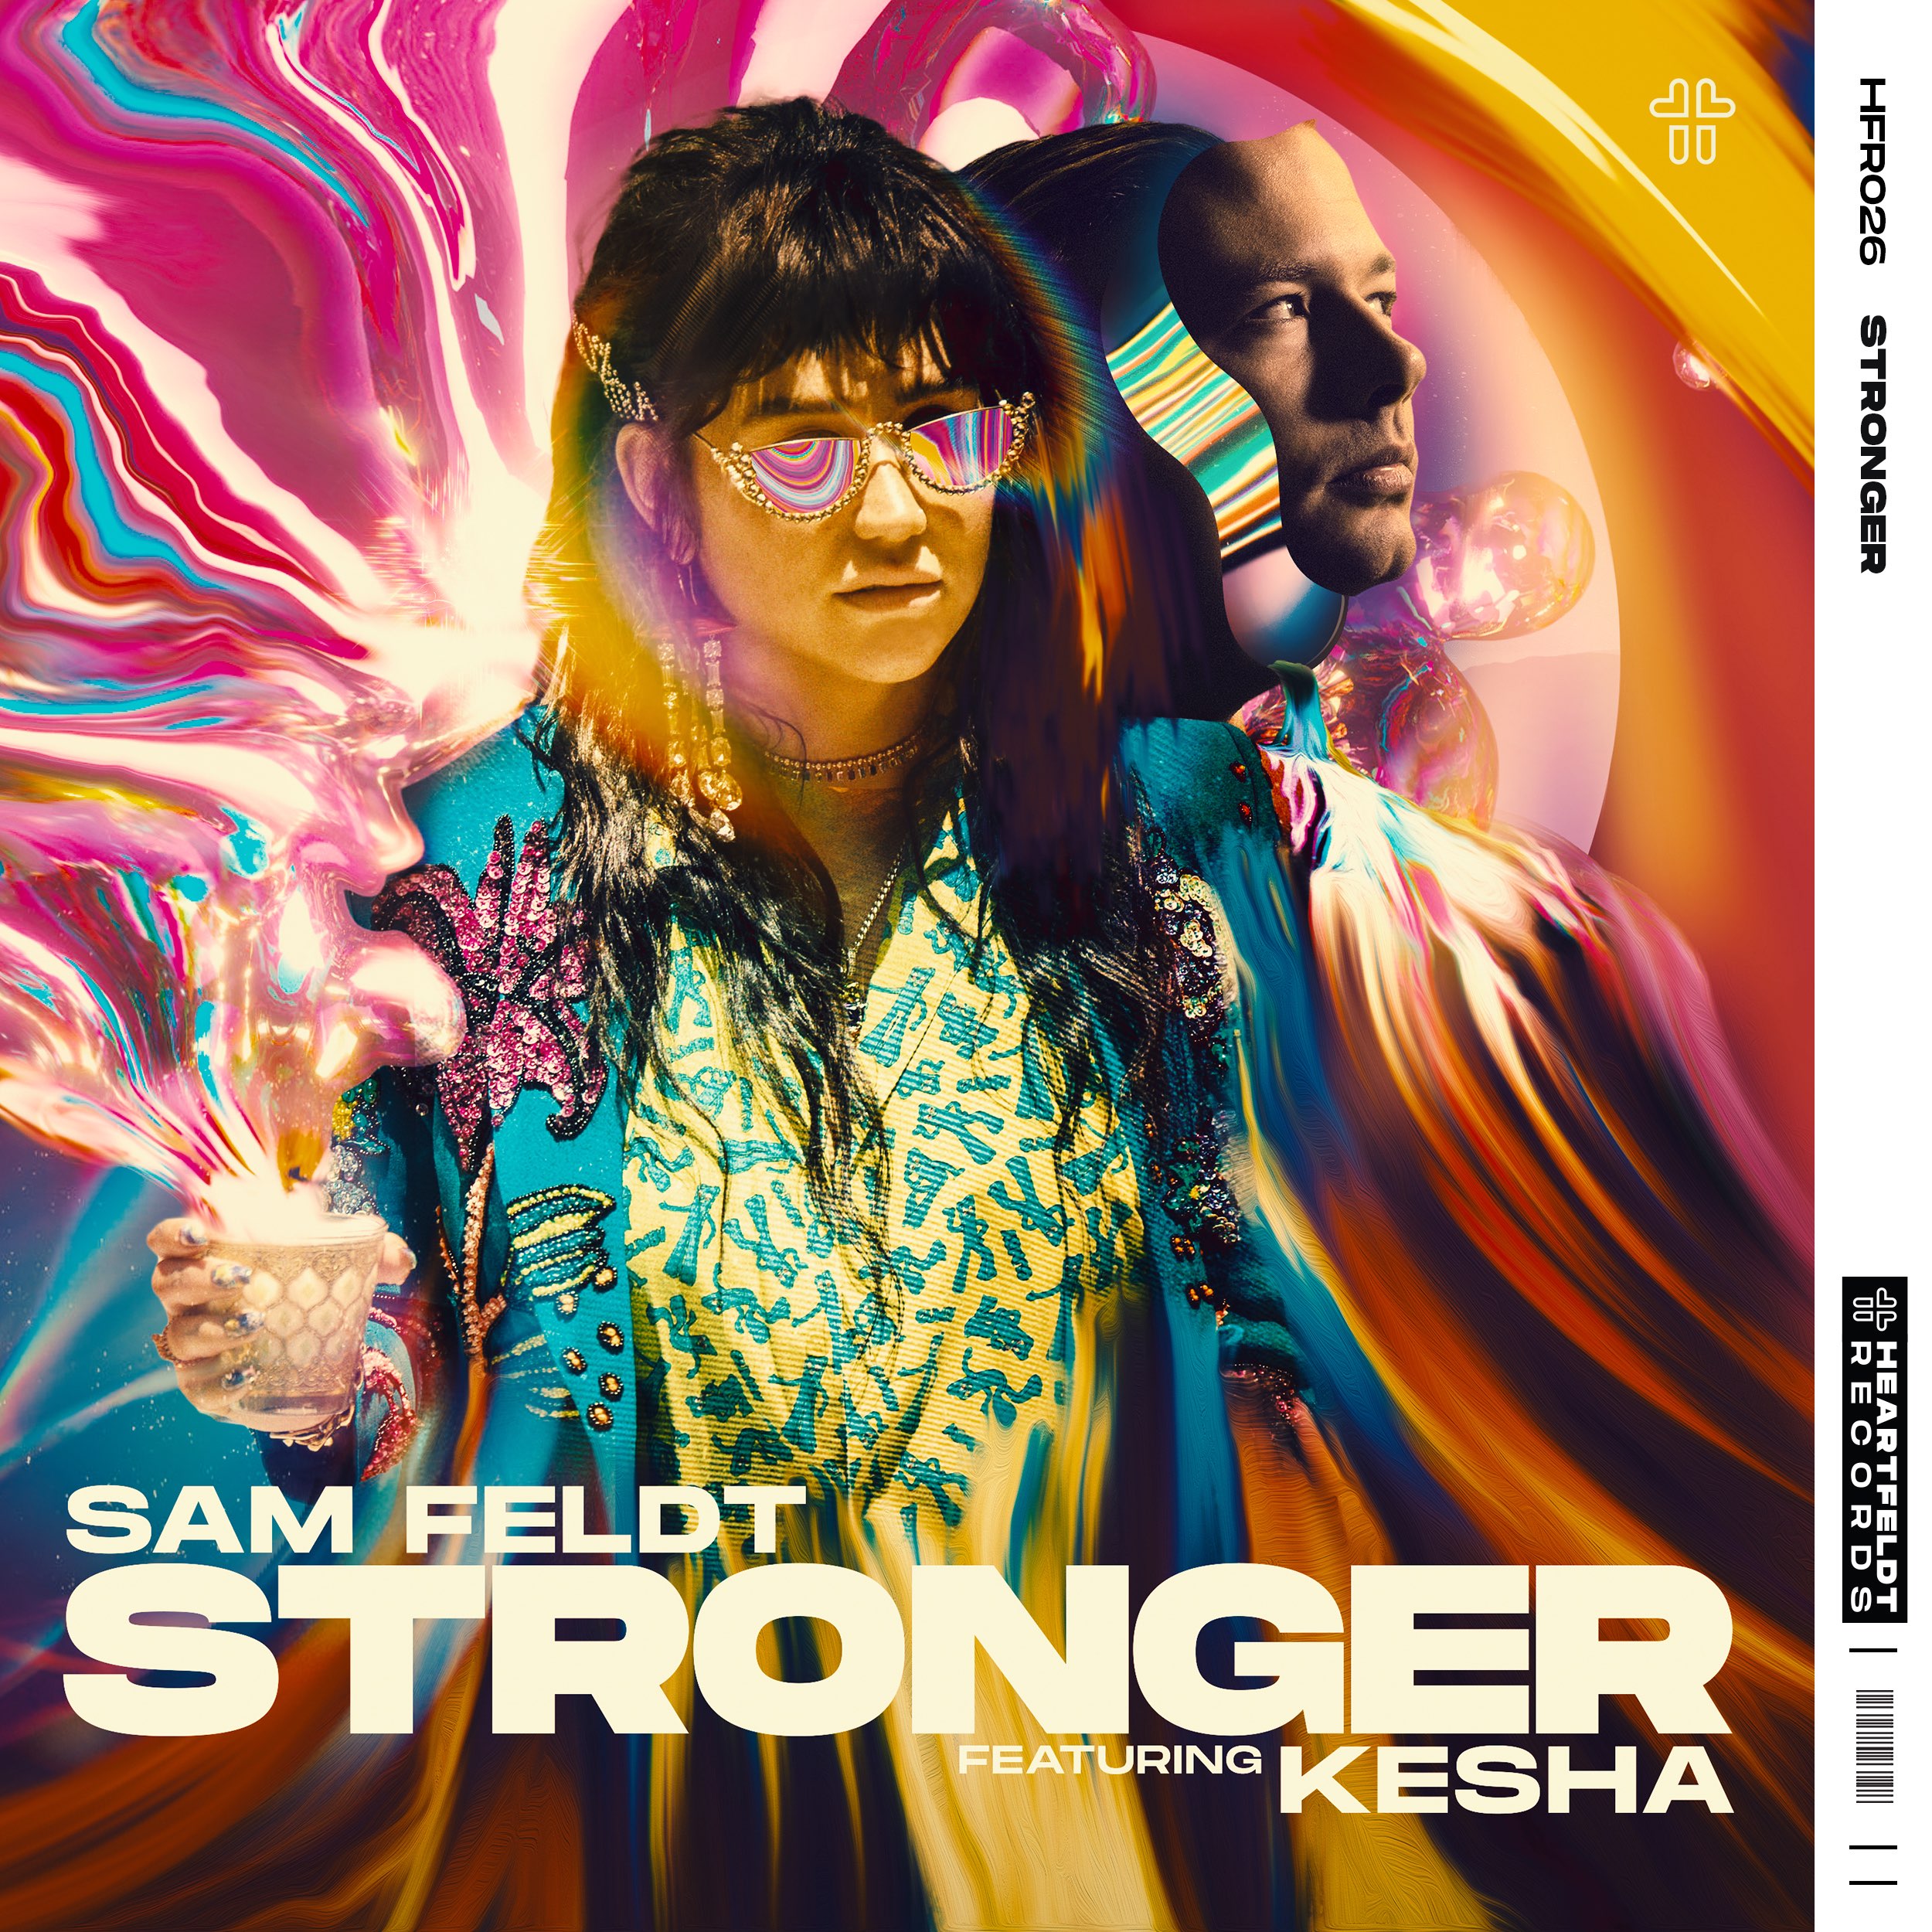 Sam Feldt featuring Kesha — Stronger cover artwork